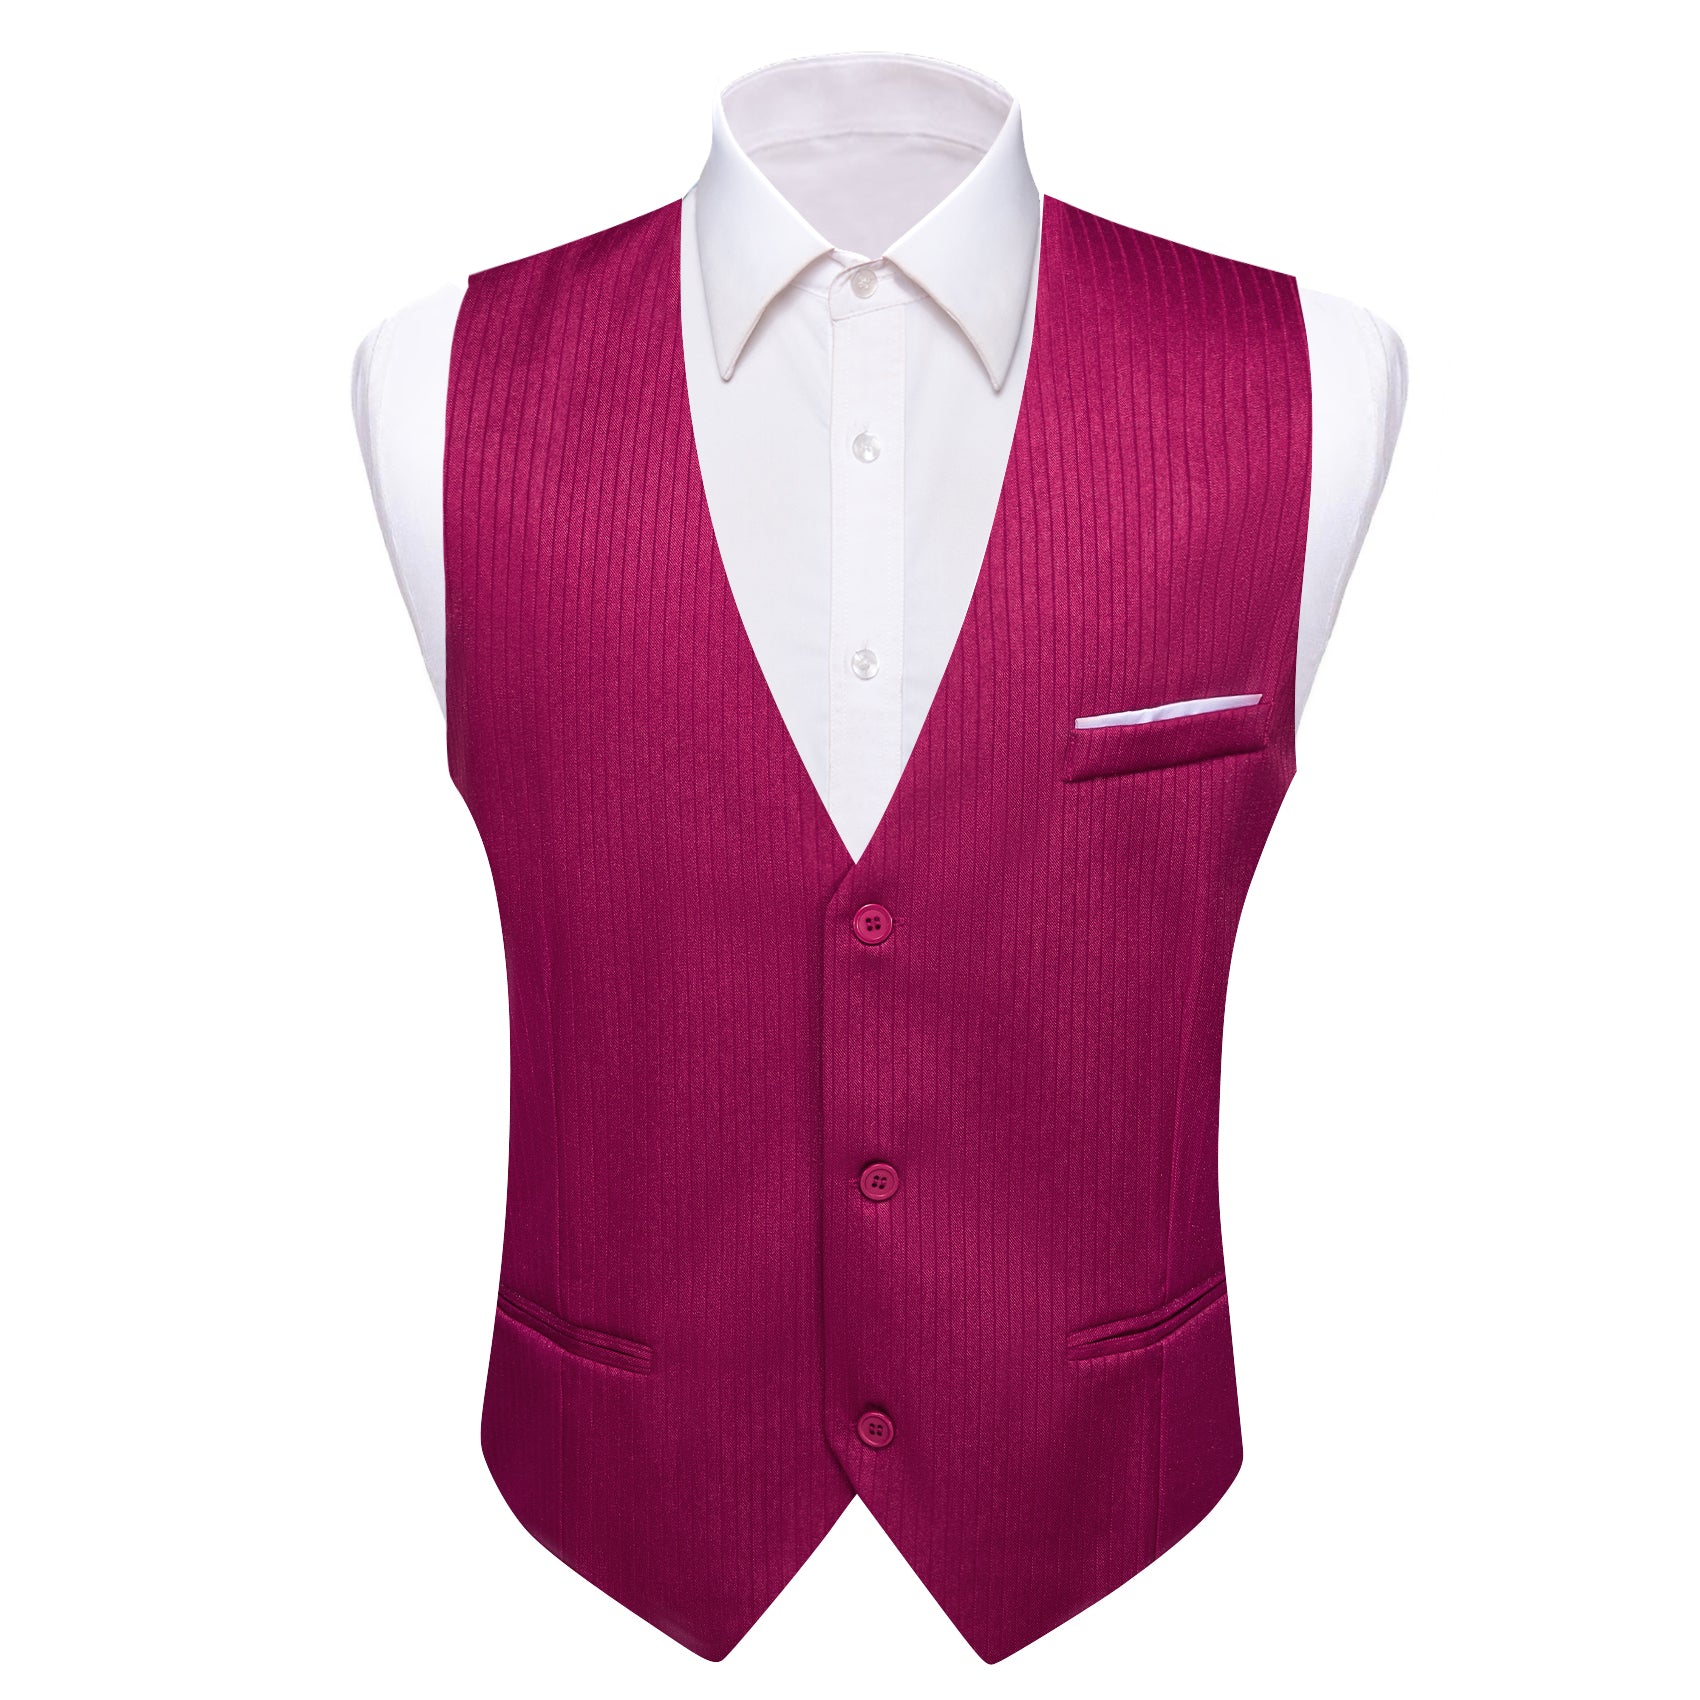 Barry.wang Iris Purple Solid Business Vest Suit